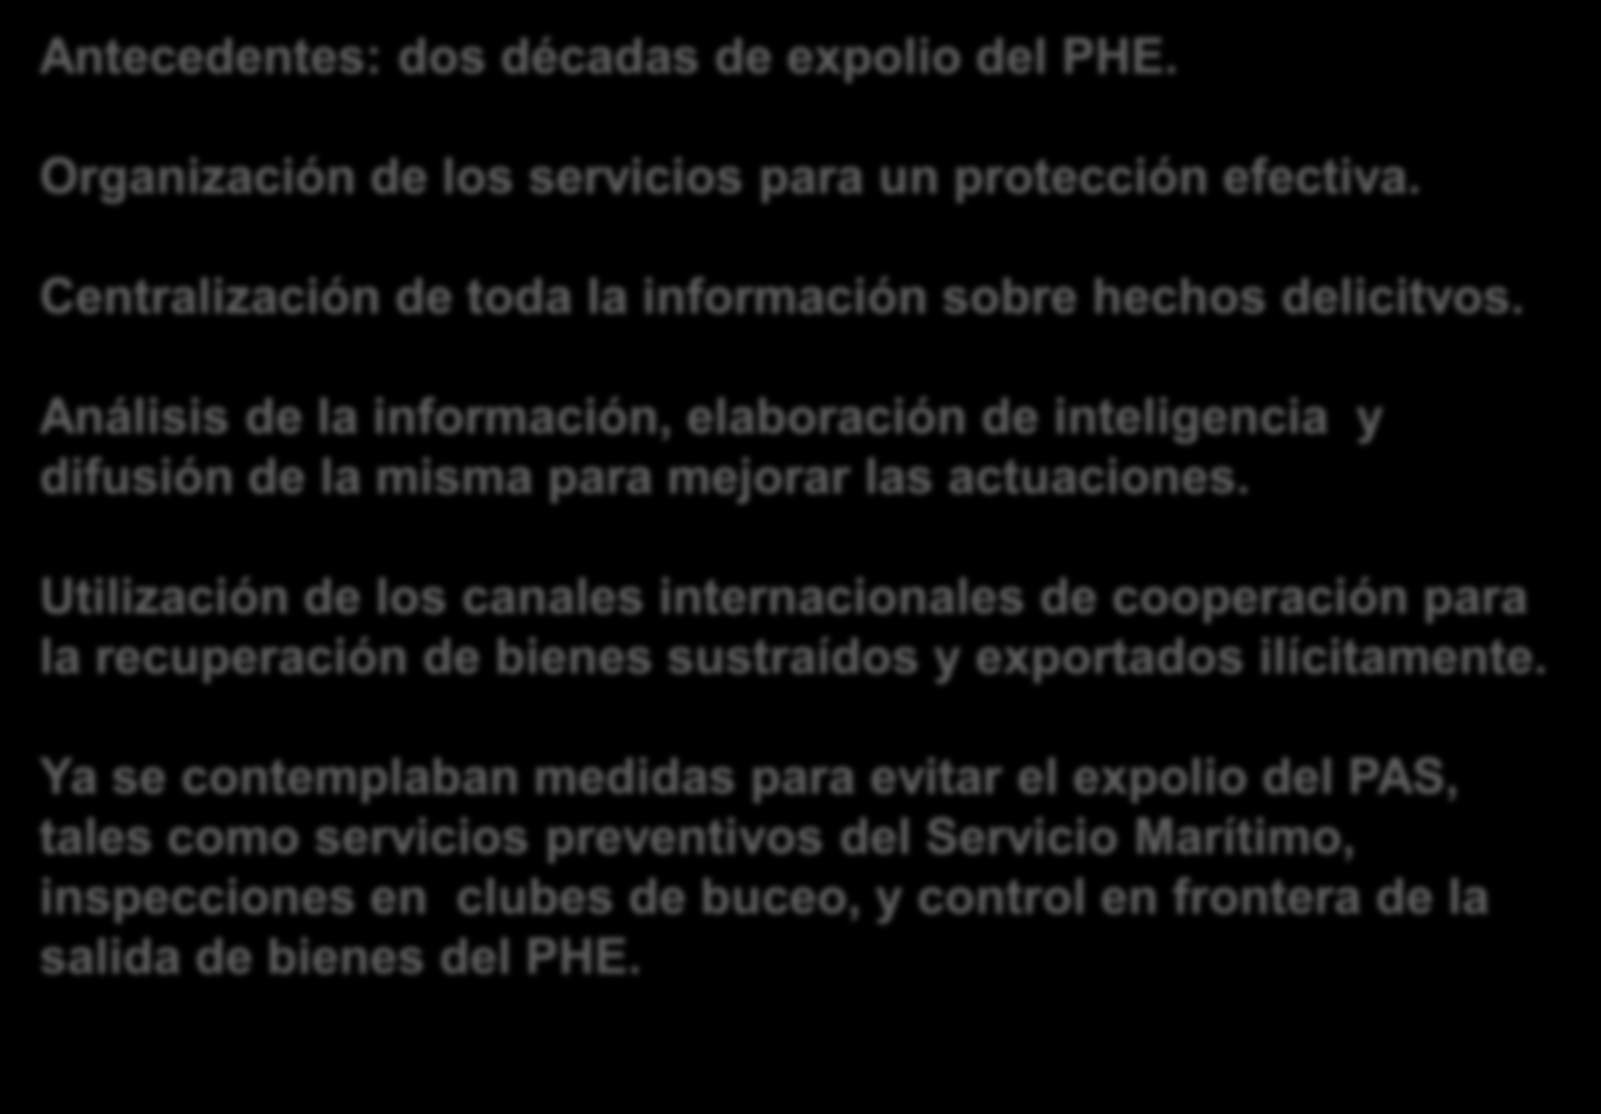 Directiva 1/97 de Defensa del Patrimonio Histórico Español Antecedentes: dos décadas de expolio del PHE. Organización de los servicios para un protección efectiva.